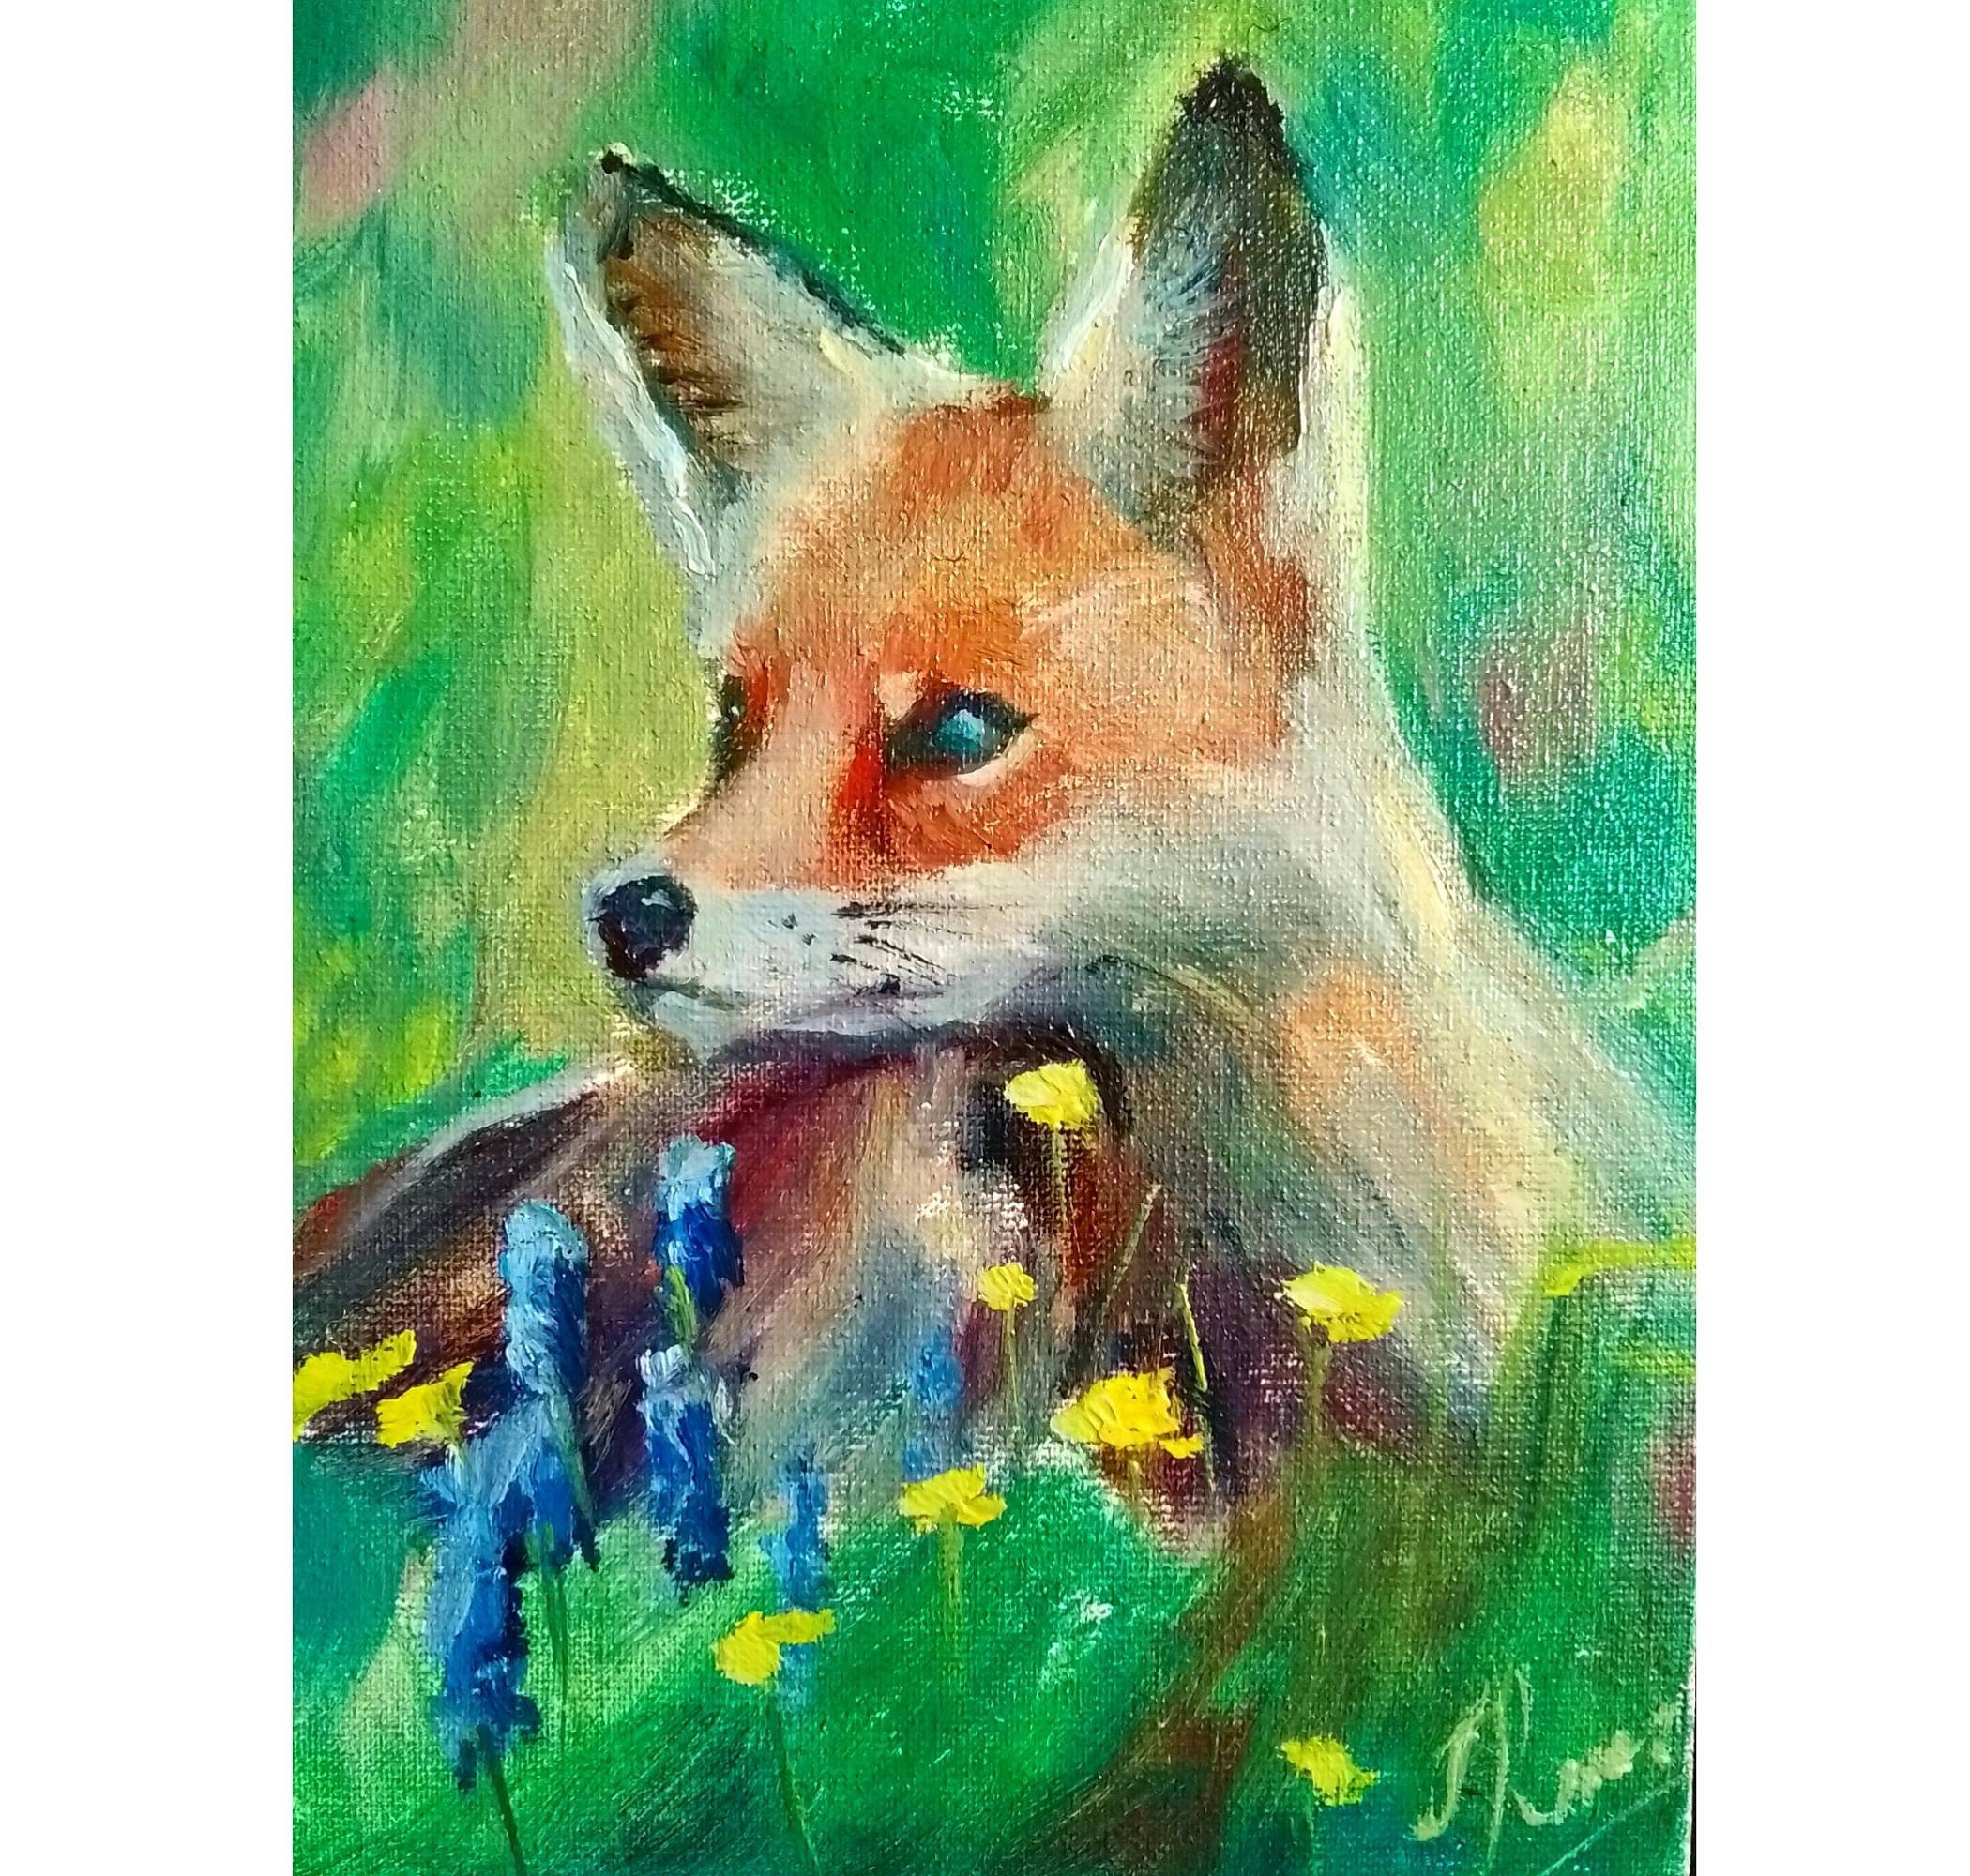 FOX renard roux et kit peinture de renard imprimé renard art réaliste  peinture animalière -  Canada